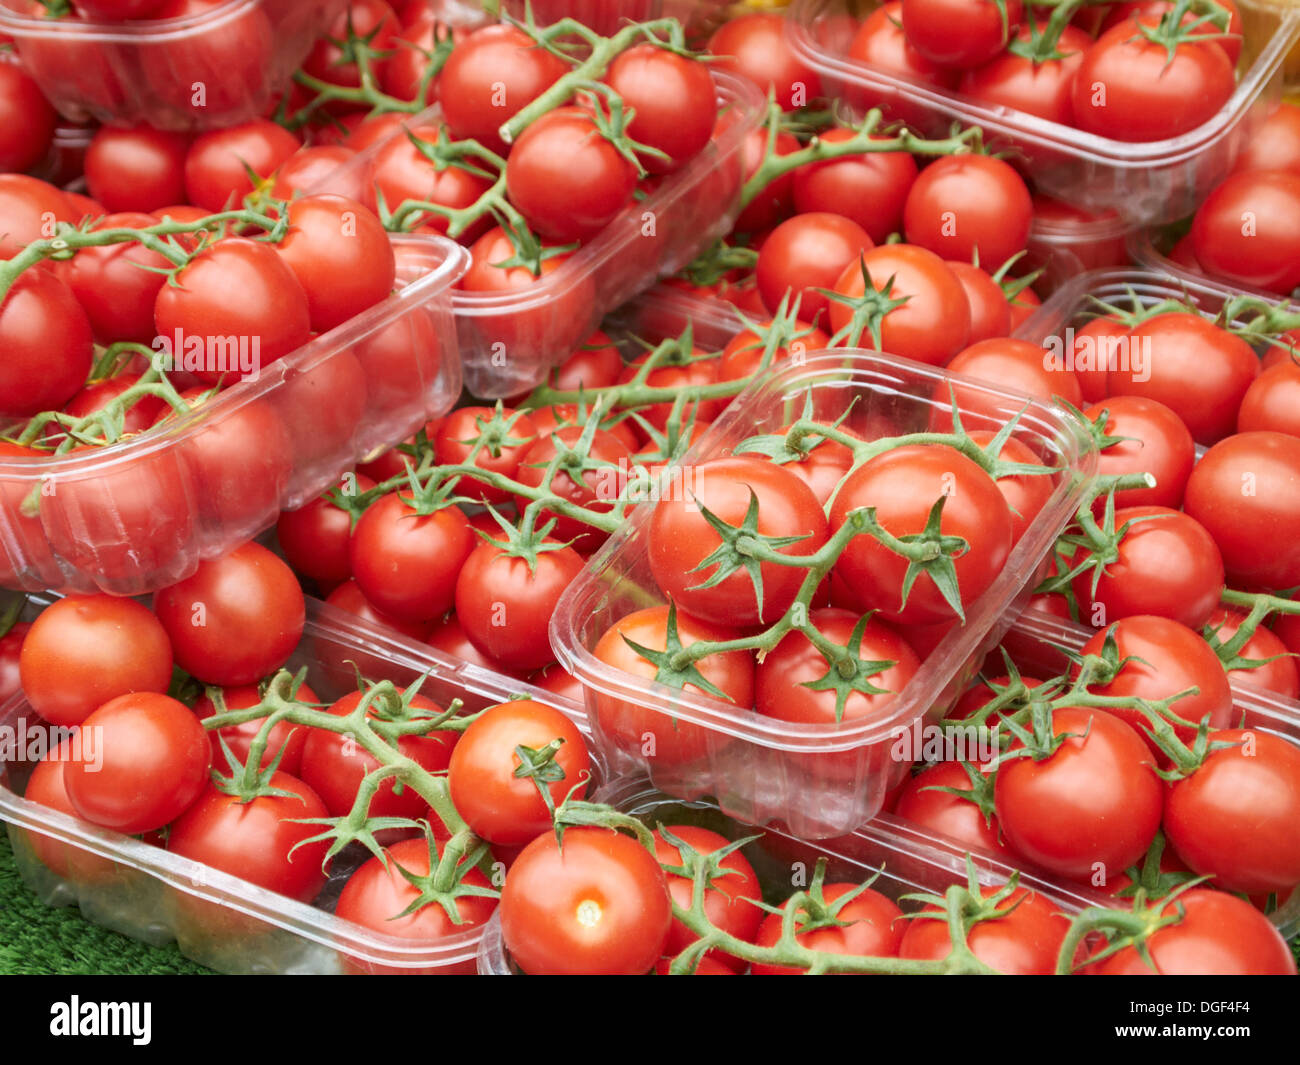 Ergeben Sie sich Tomaten in Bad Bauernmarkt, England Stockfoto